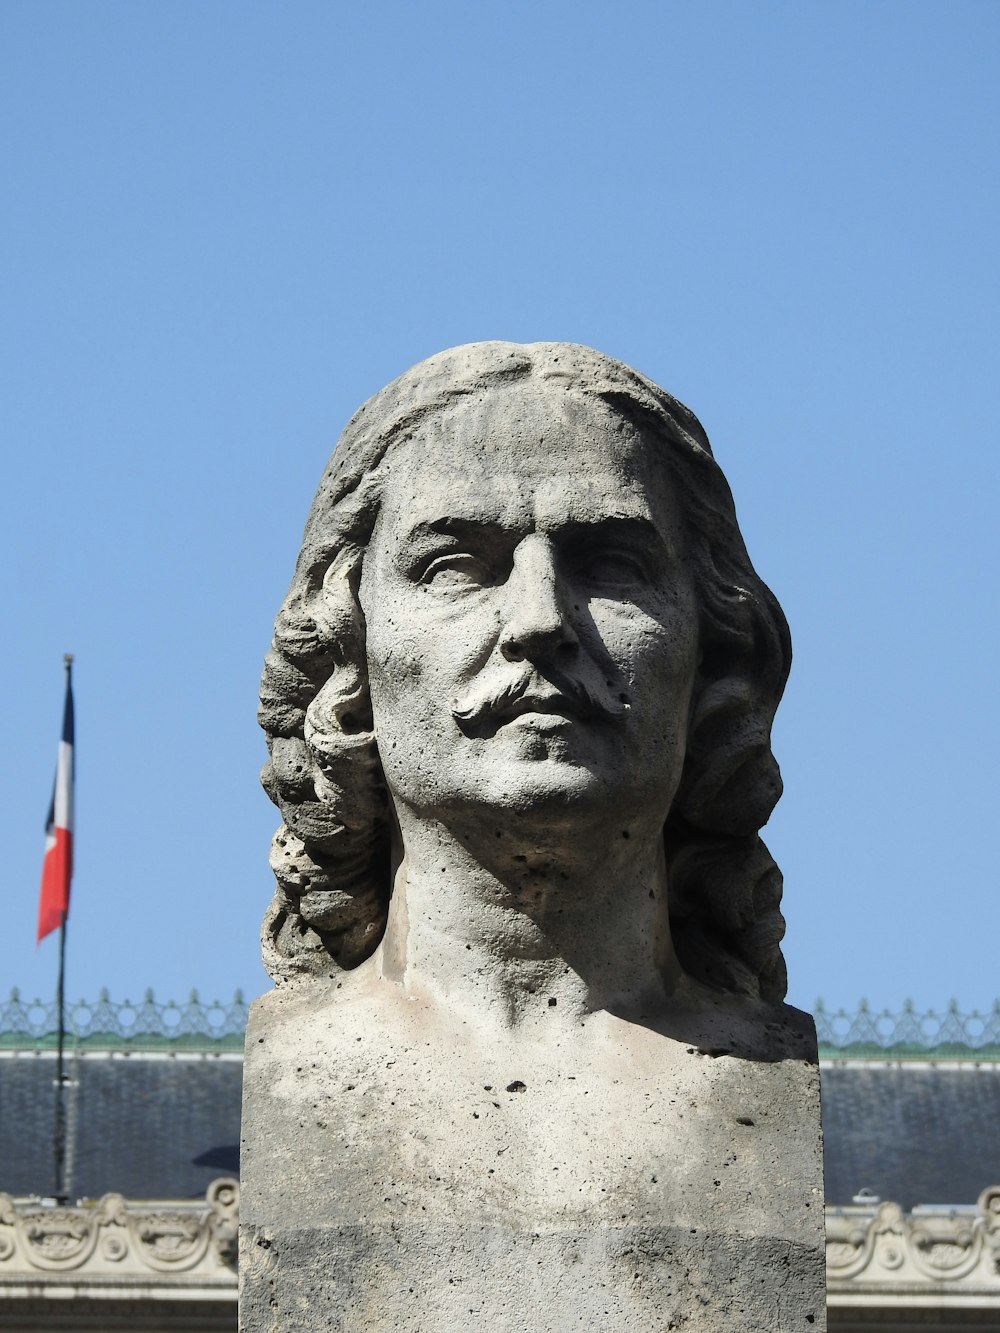 Statue des Mannes mit Flagge auf dem Kopf